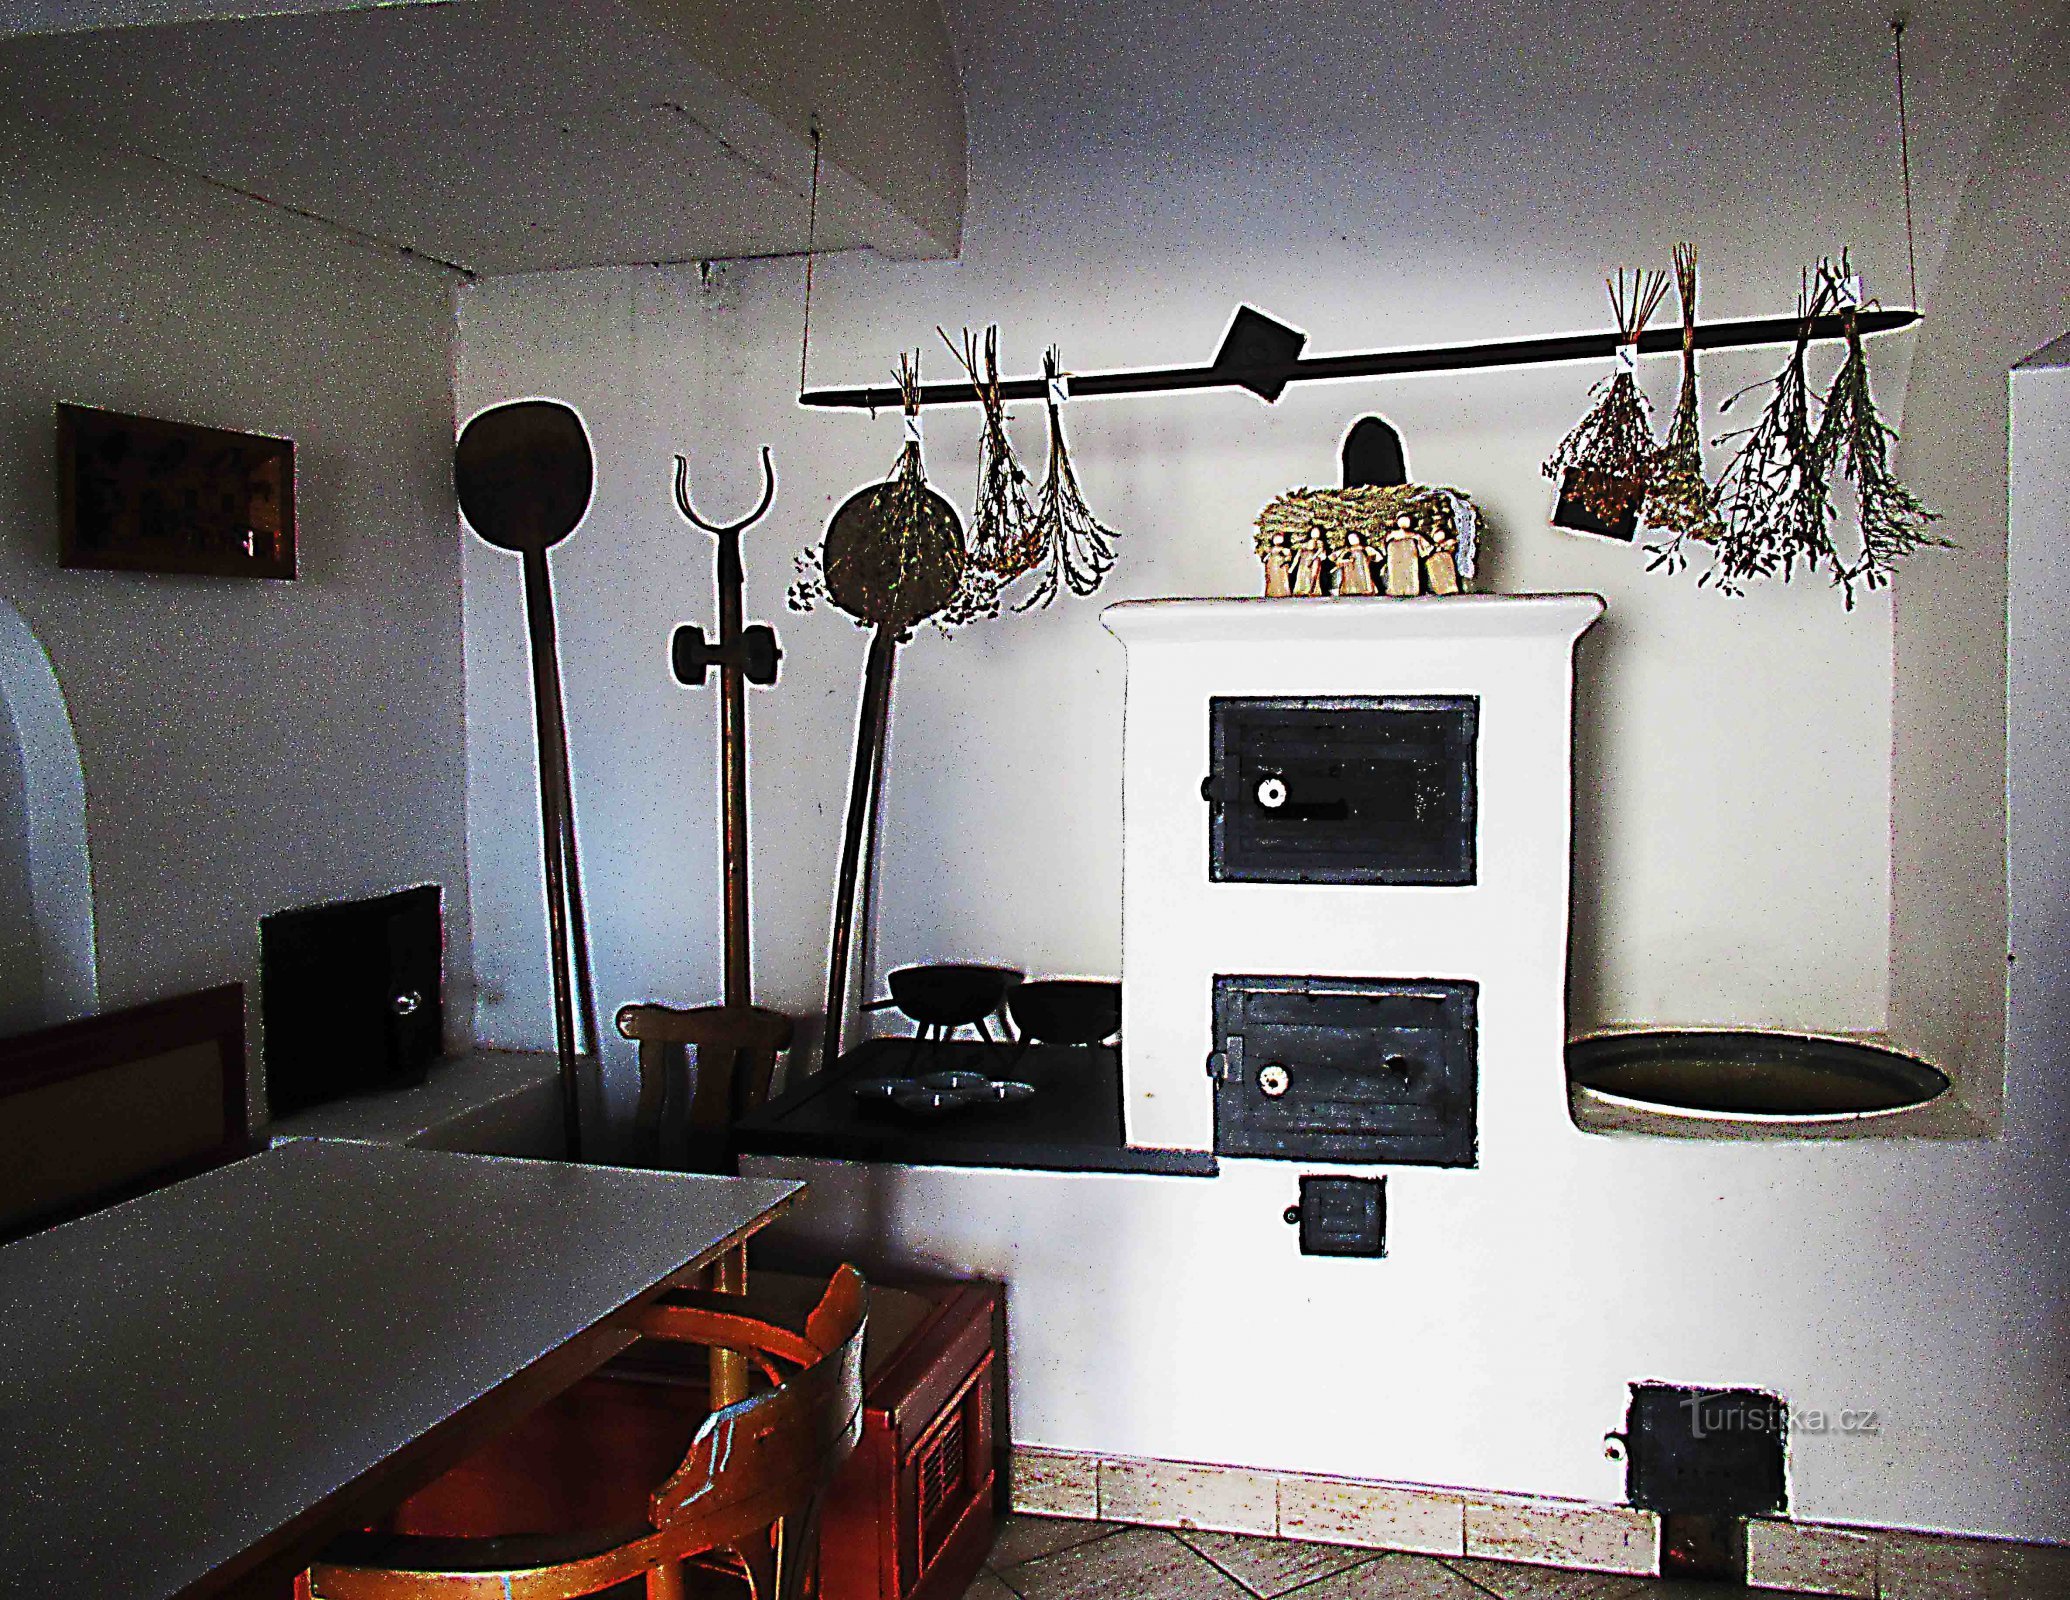 Een klein smederijmuseum in de smederij van Zeman in Holešov